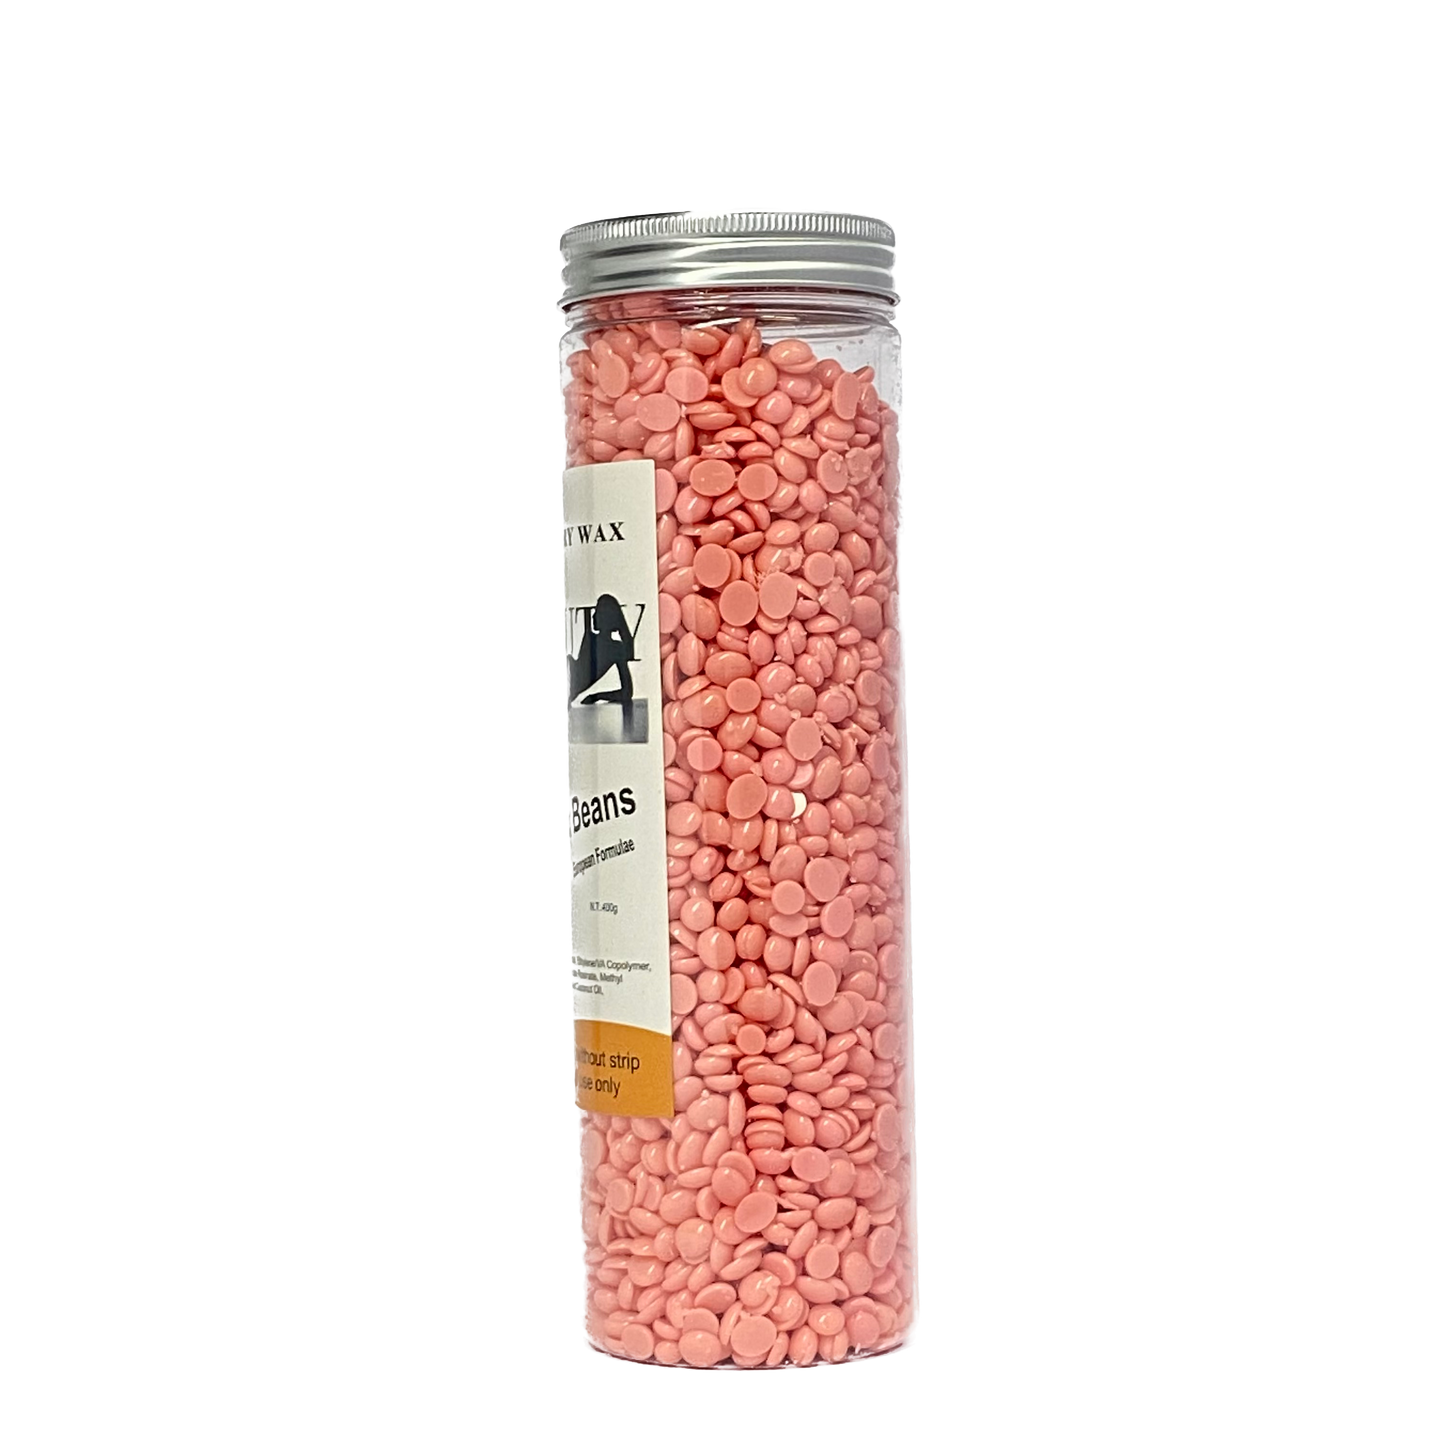 NU+ Beauty Hard Wax Beans (400g)